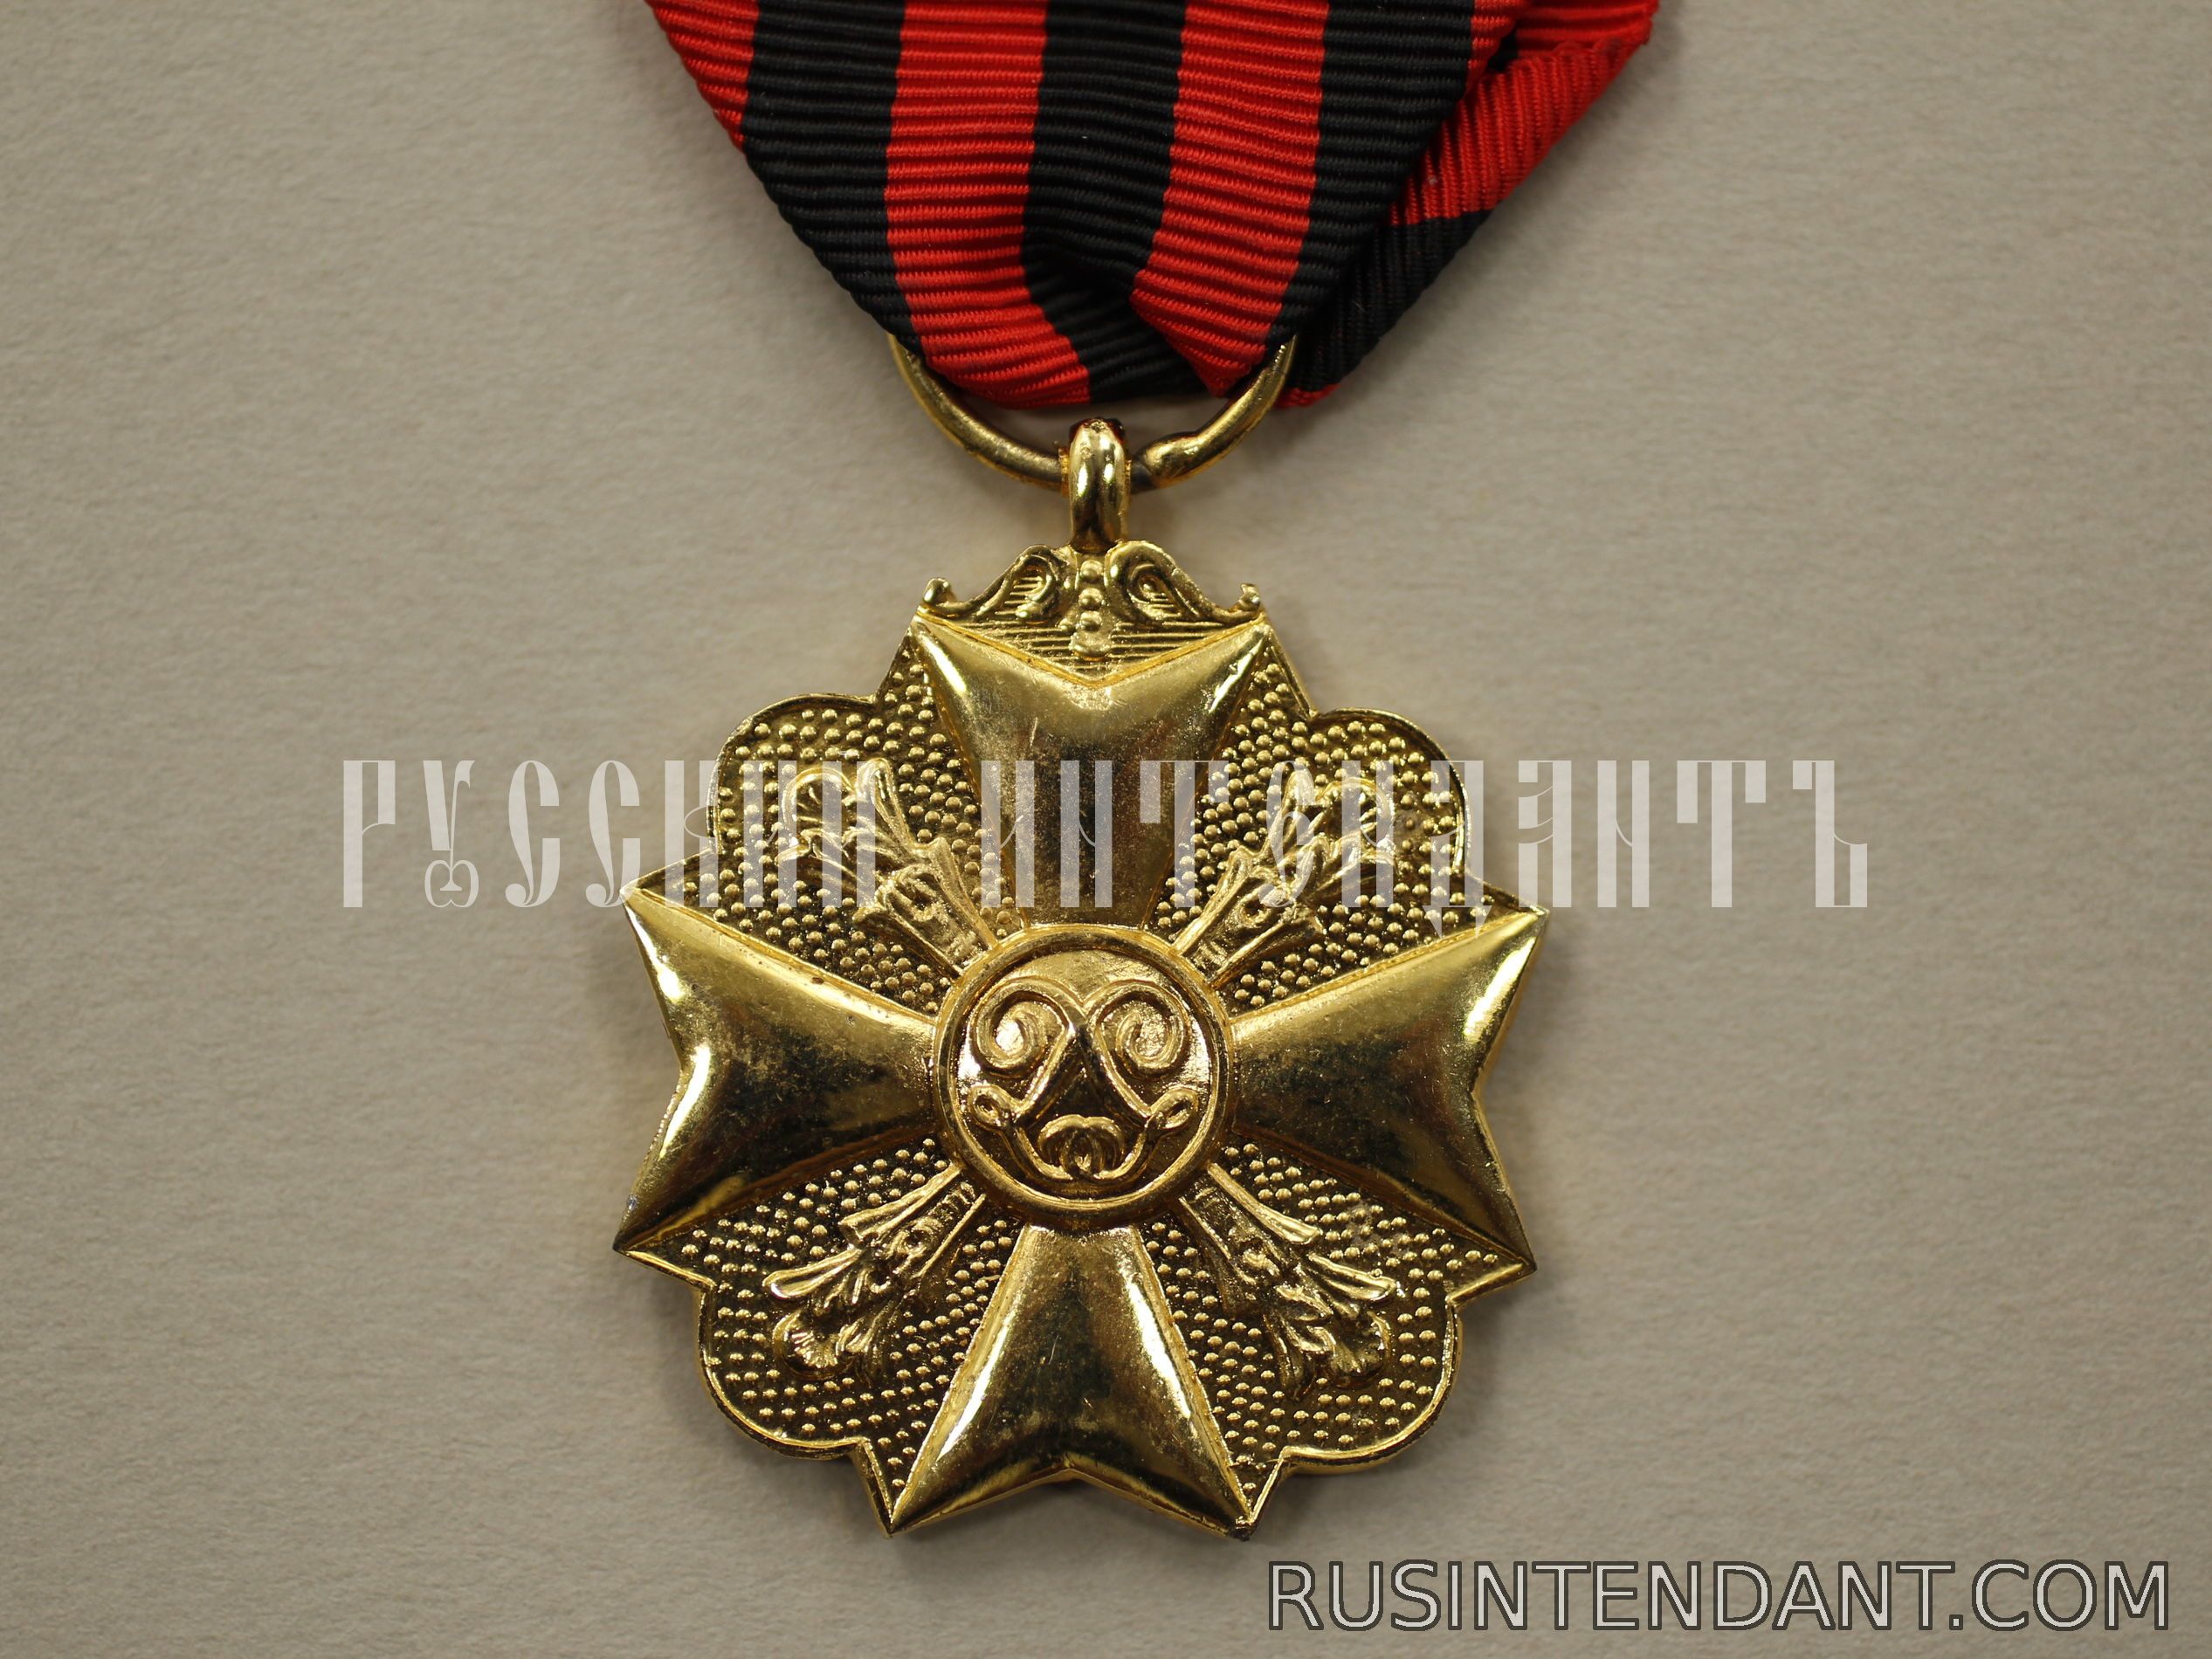 Фото 2: Золотая медаль Гражданского знака отличия 